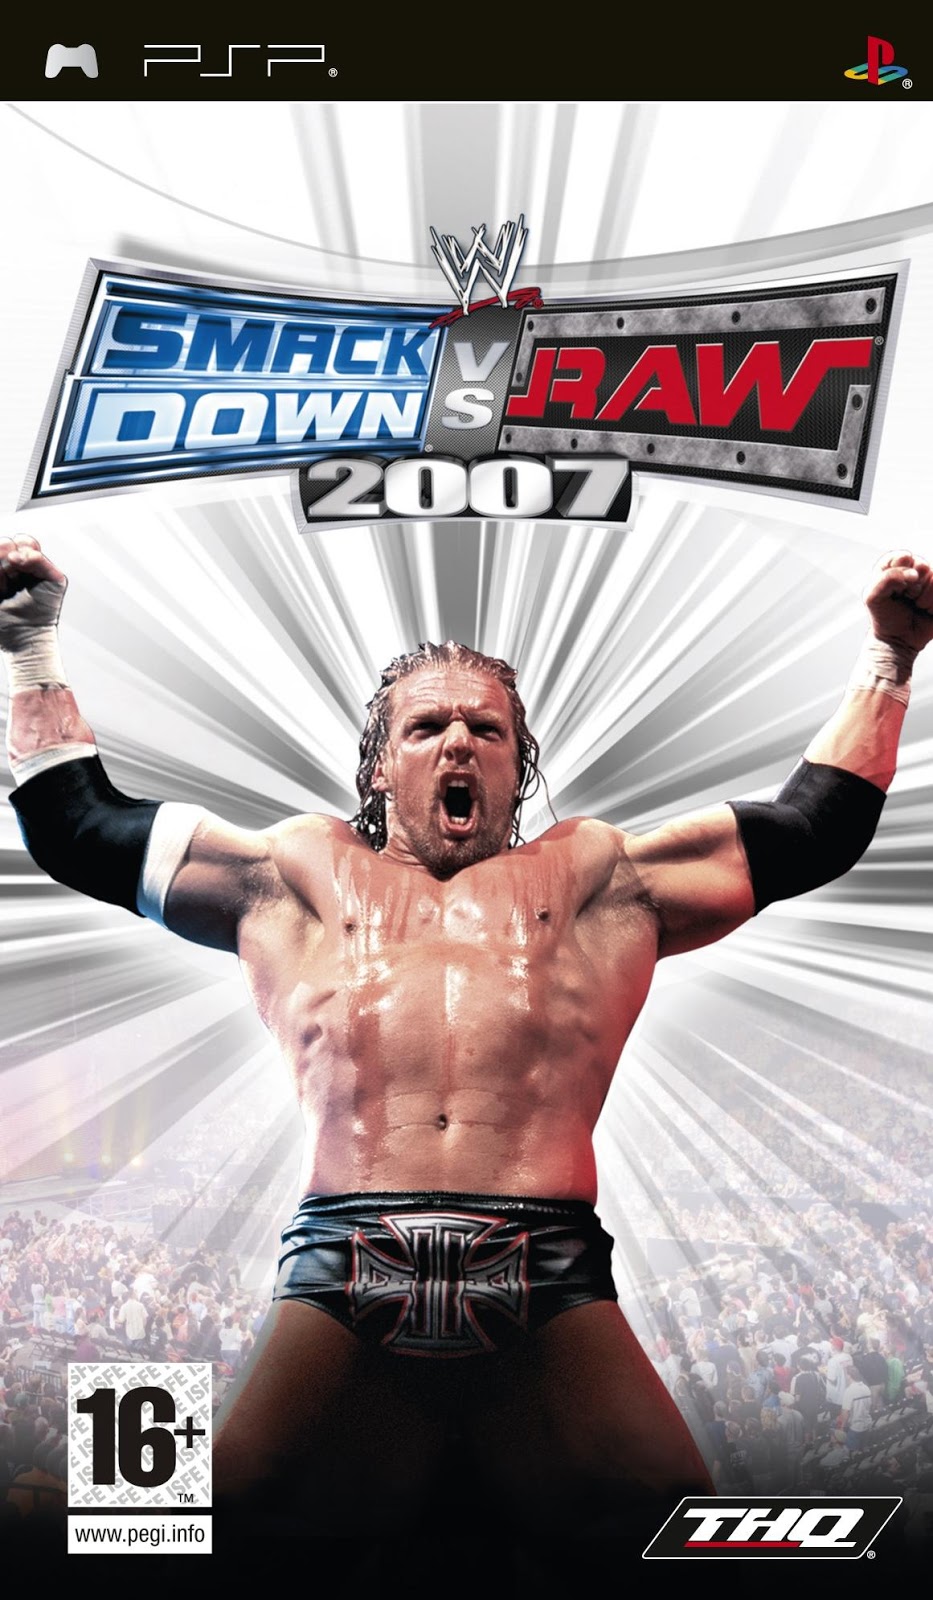 WWE Smack Down vs Raw 2007